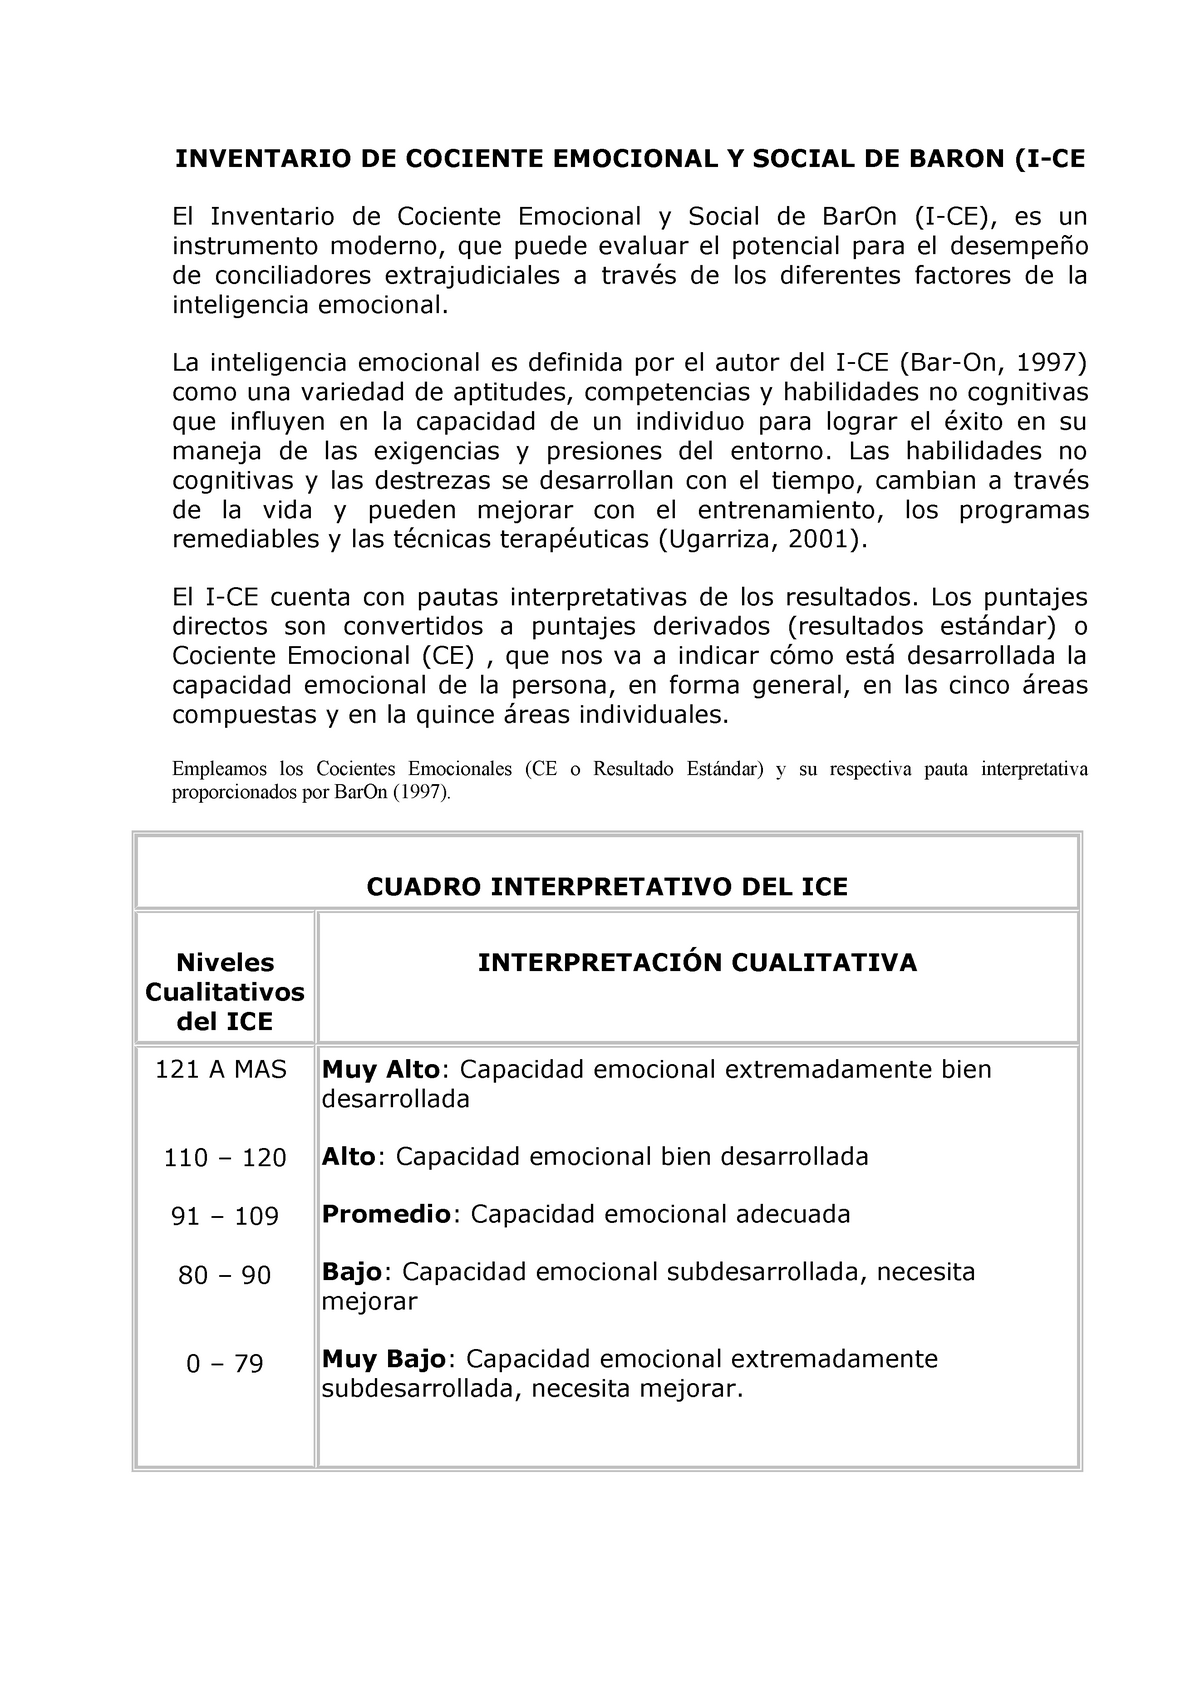 Manual DE ICE BAR ON actualizado - INVENTARIO DE COCIENTE EMOCIONAL Y  SOCIAL DE BARON (I-CE El - Studocu